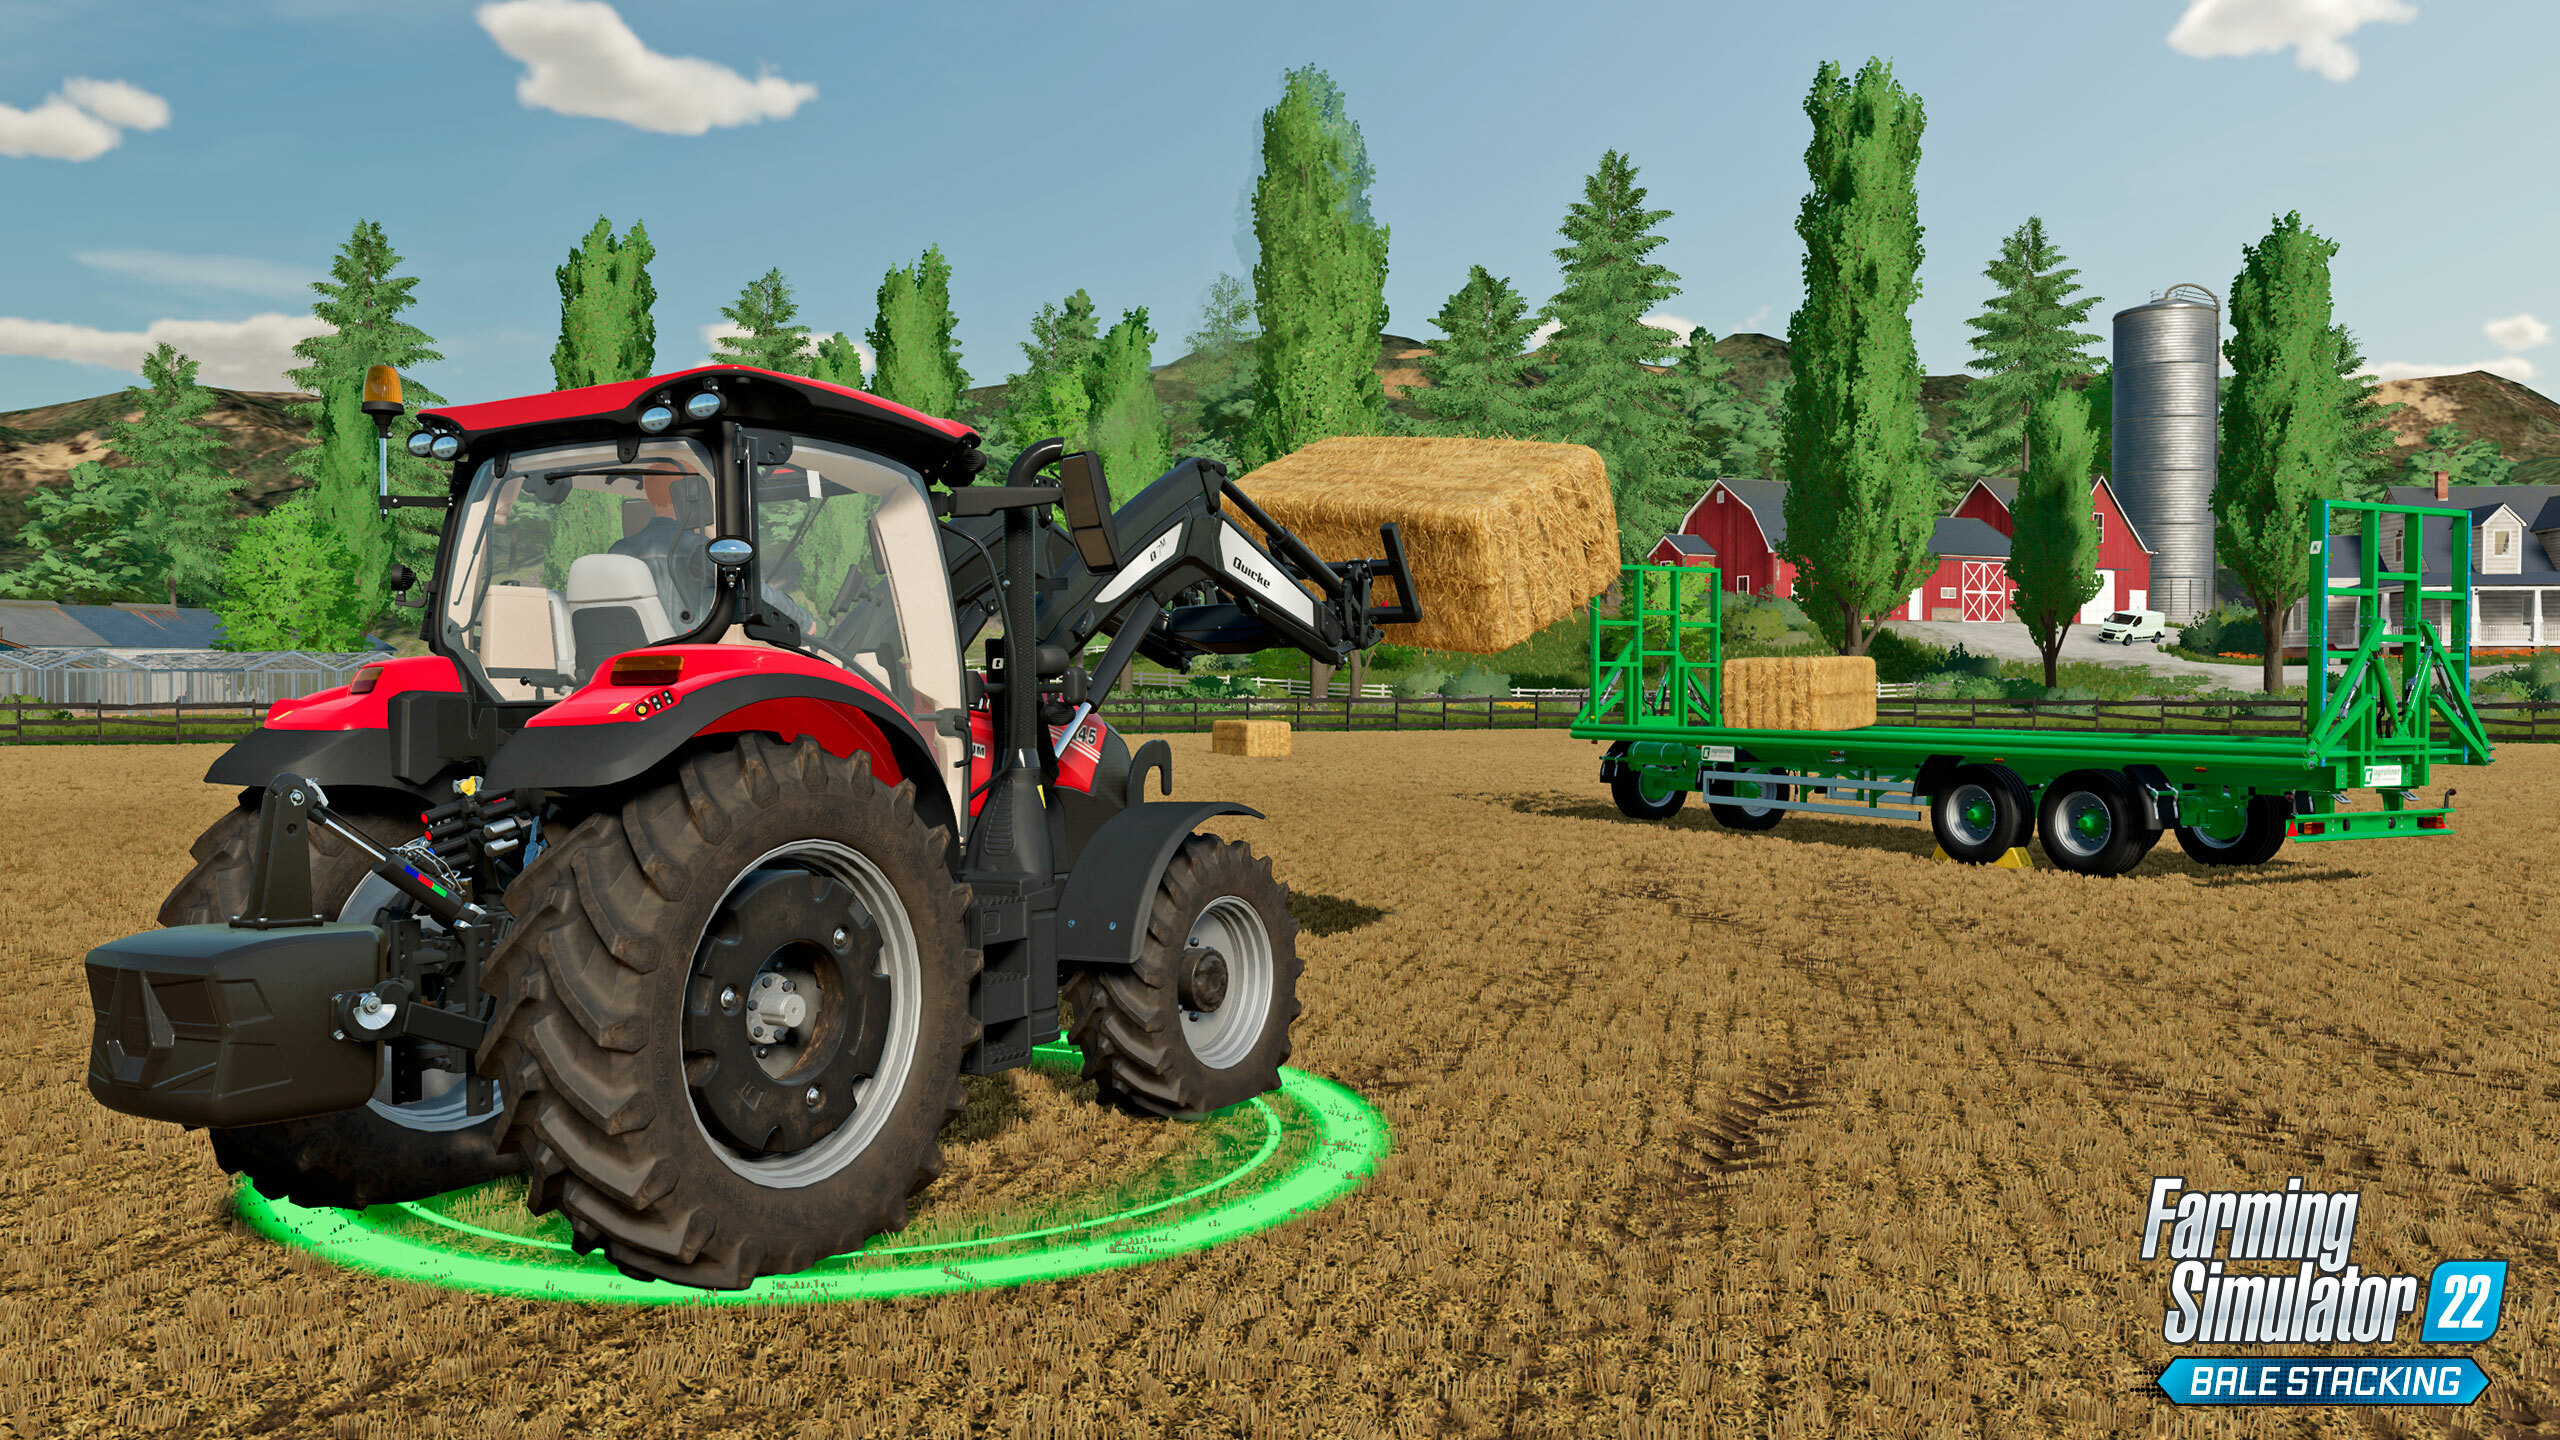 Farming Simulator 22 - Year 1 Bundle Steam Key for PC and Mac